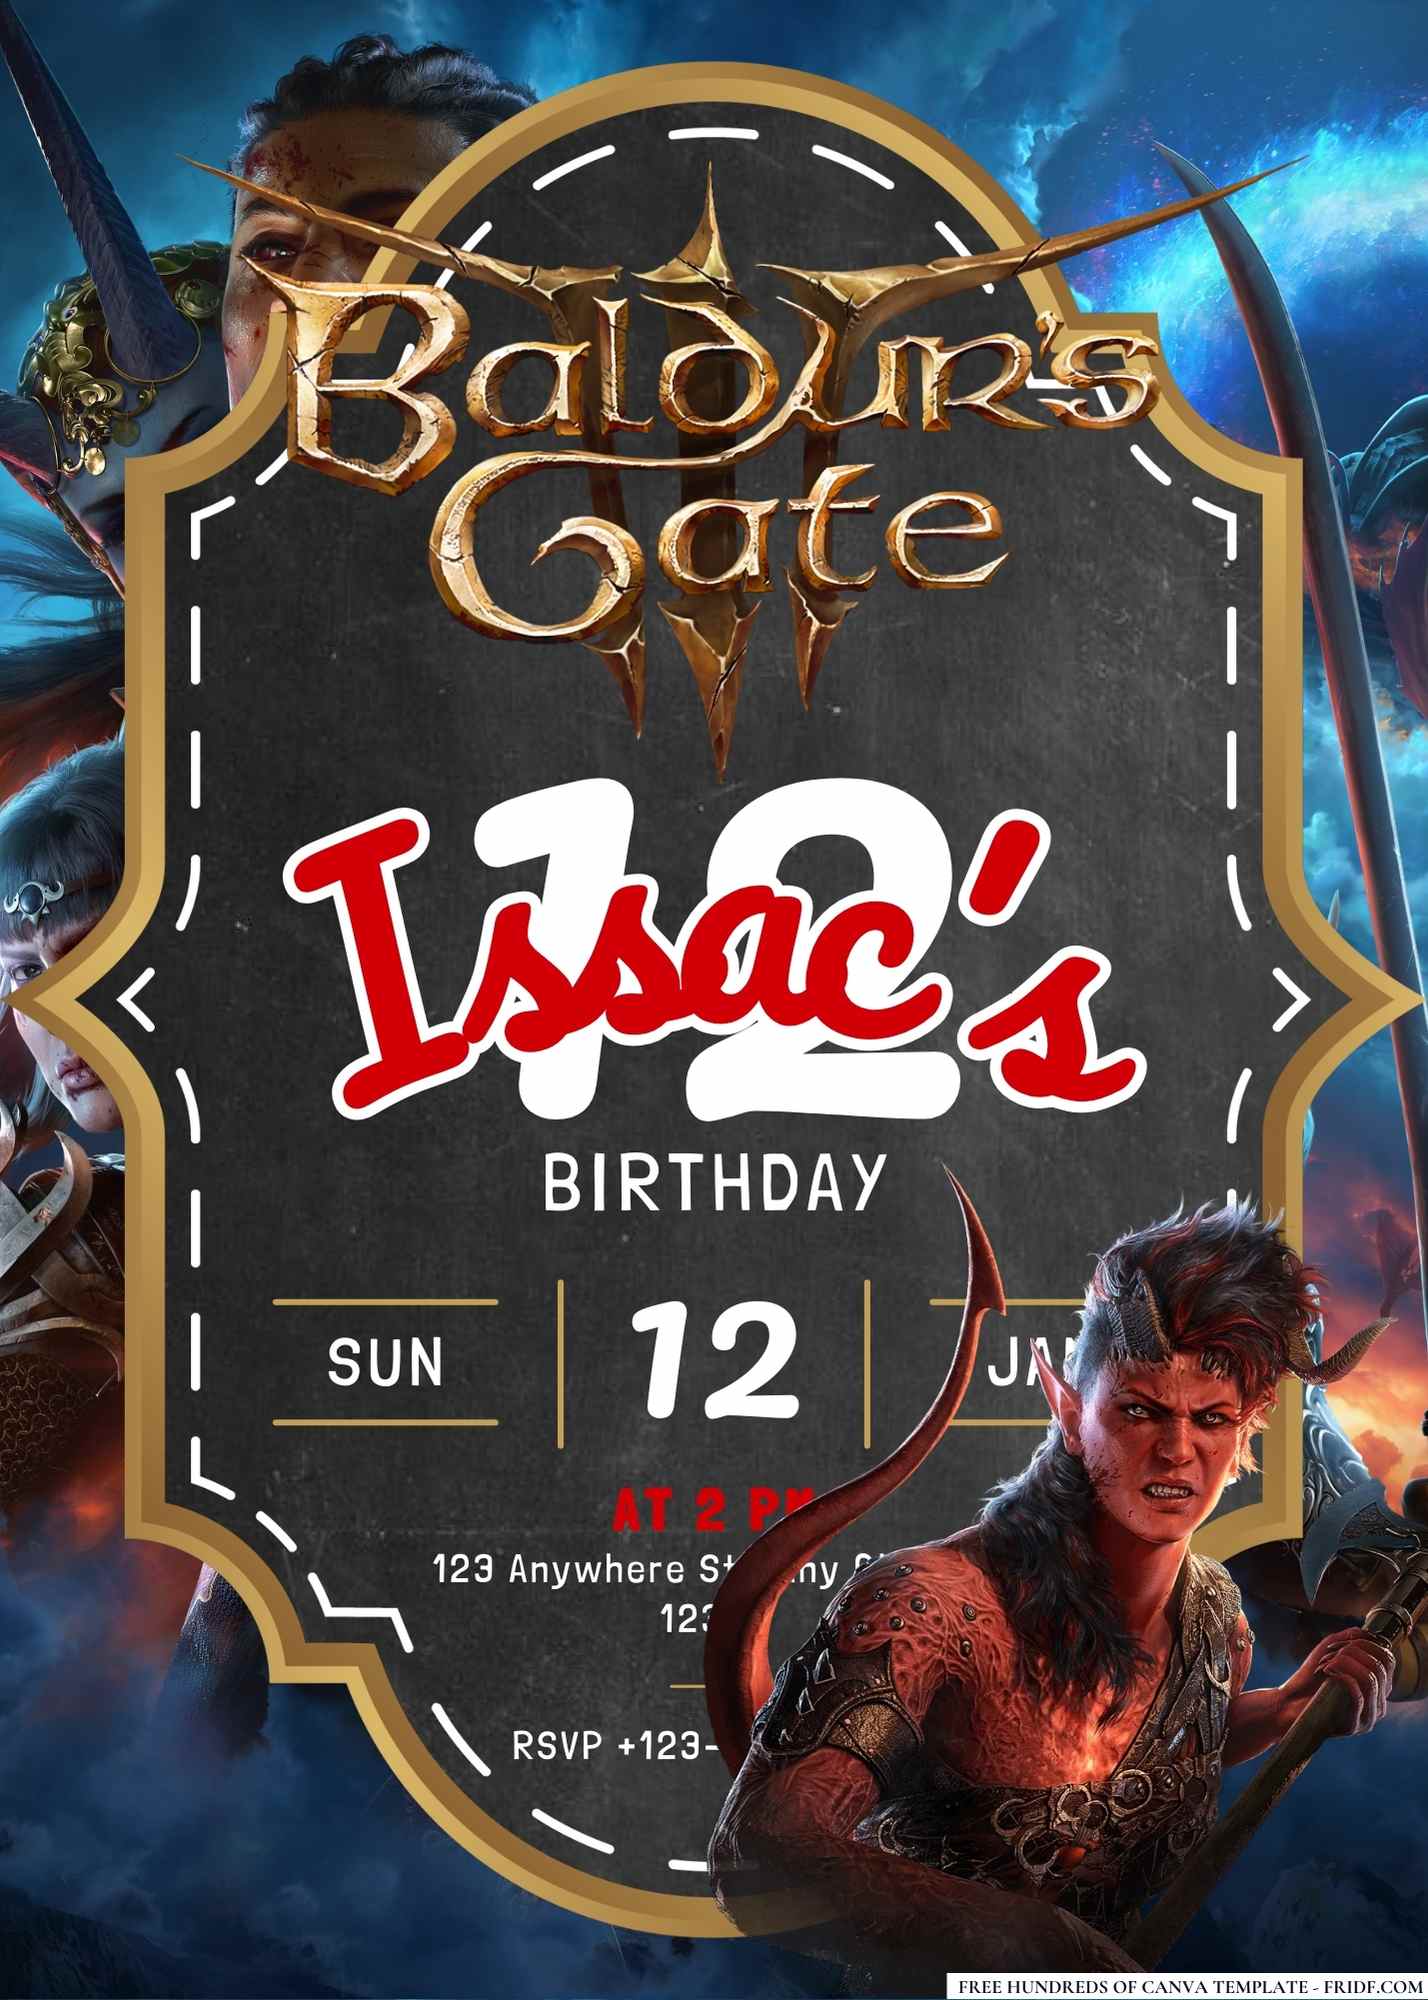 FREE Editable Baldur's Gate III Birthday Invitation